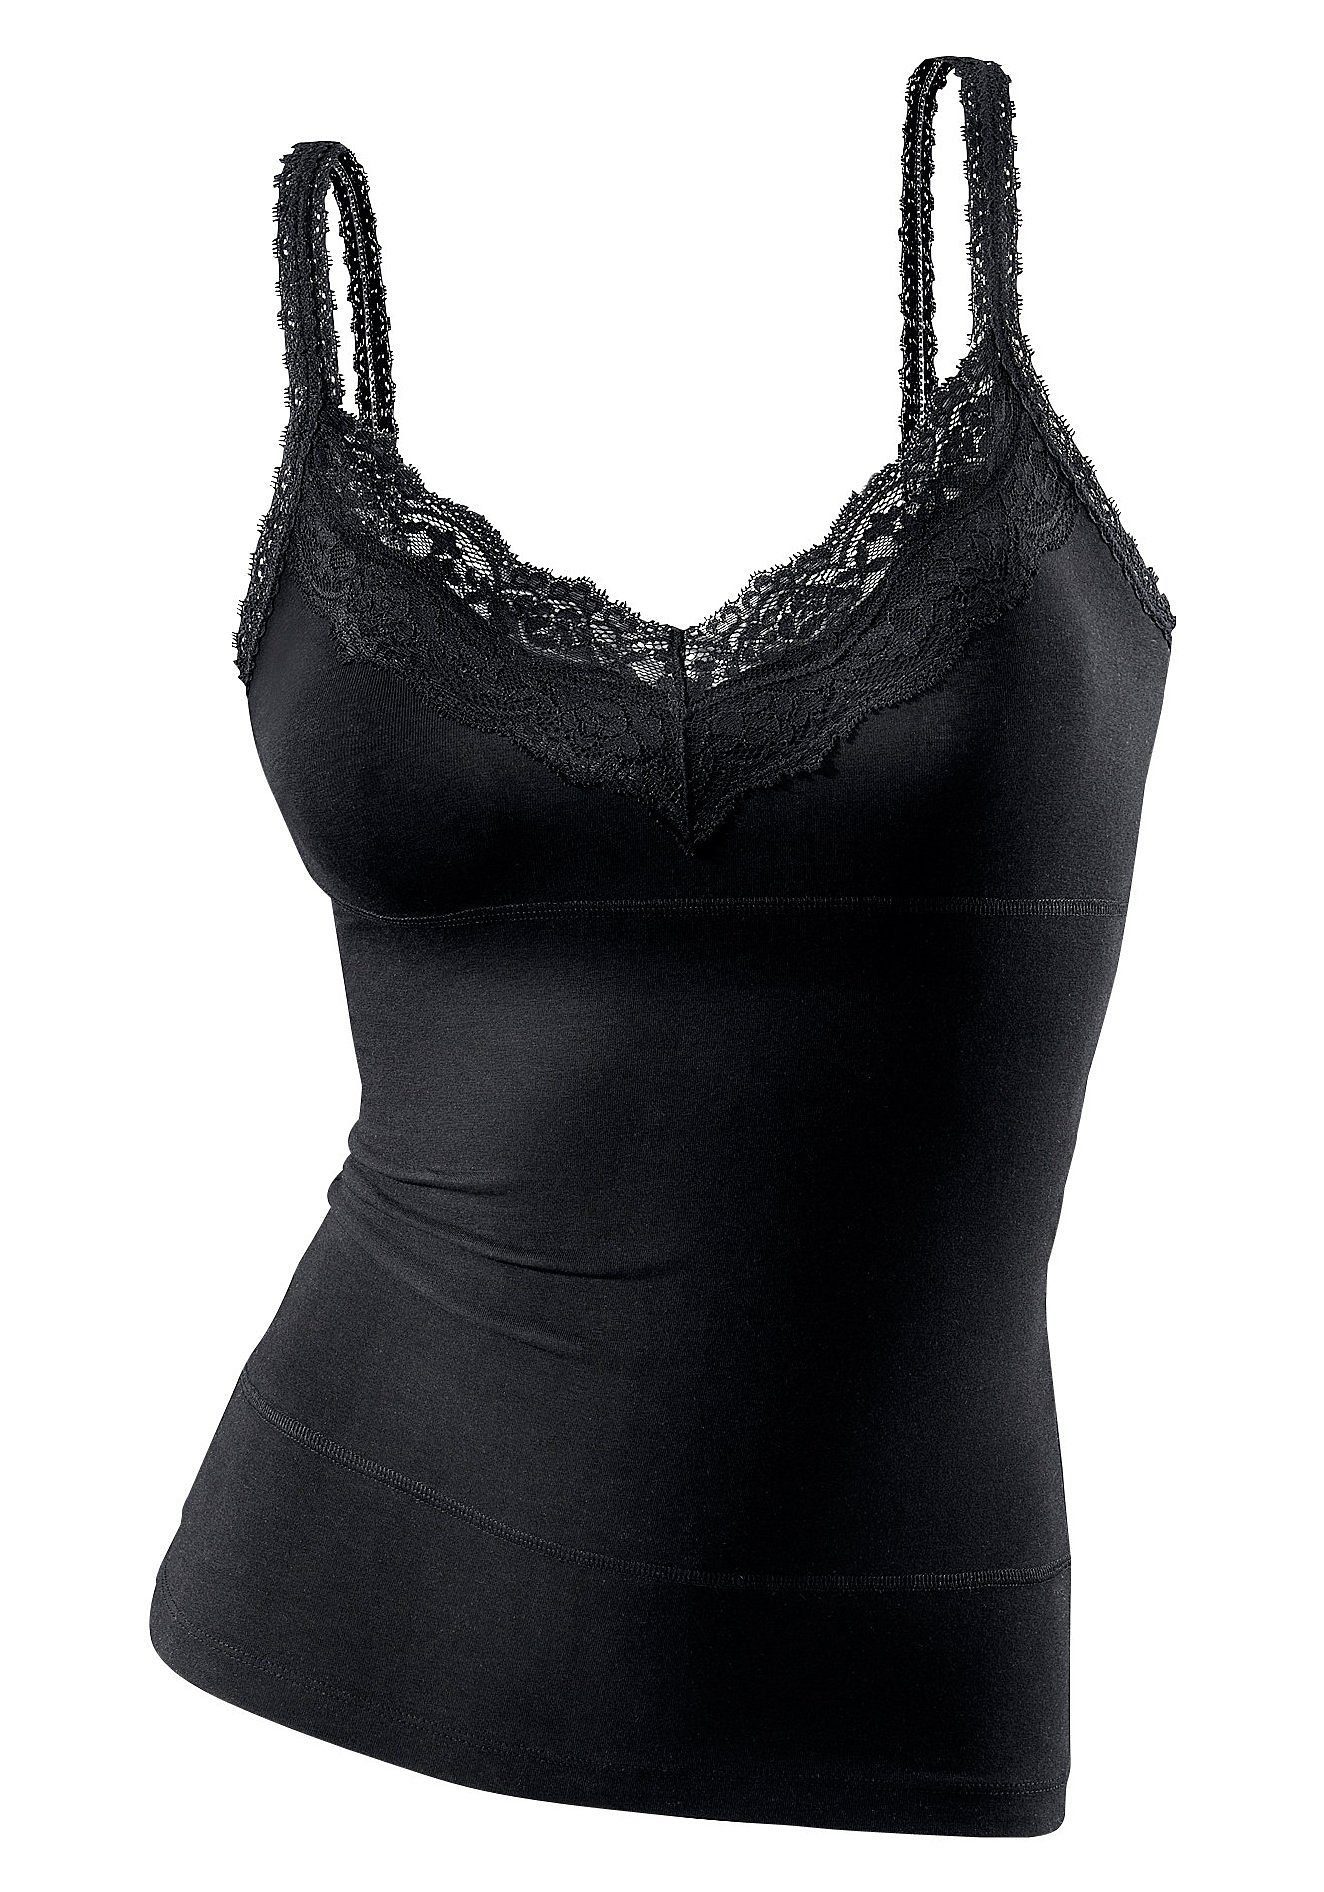 schwarz bodyforming Unterhemd LASCANA Effekt, Baumwolle, elastische Spaghettiträger-Top mit